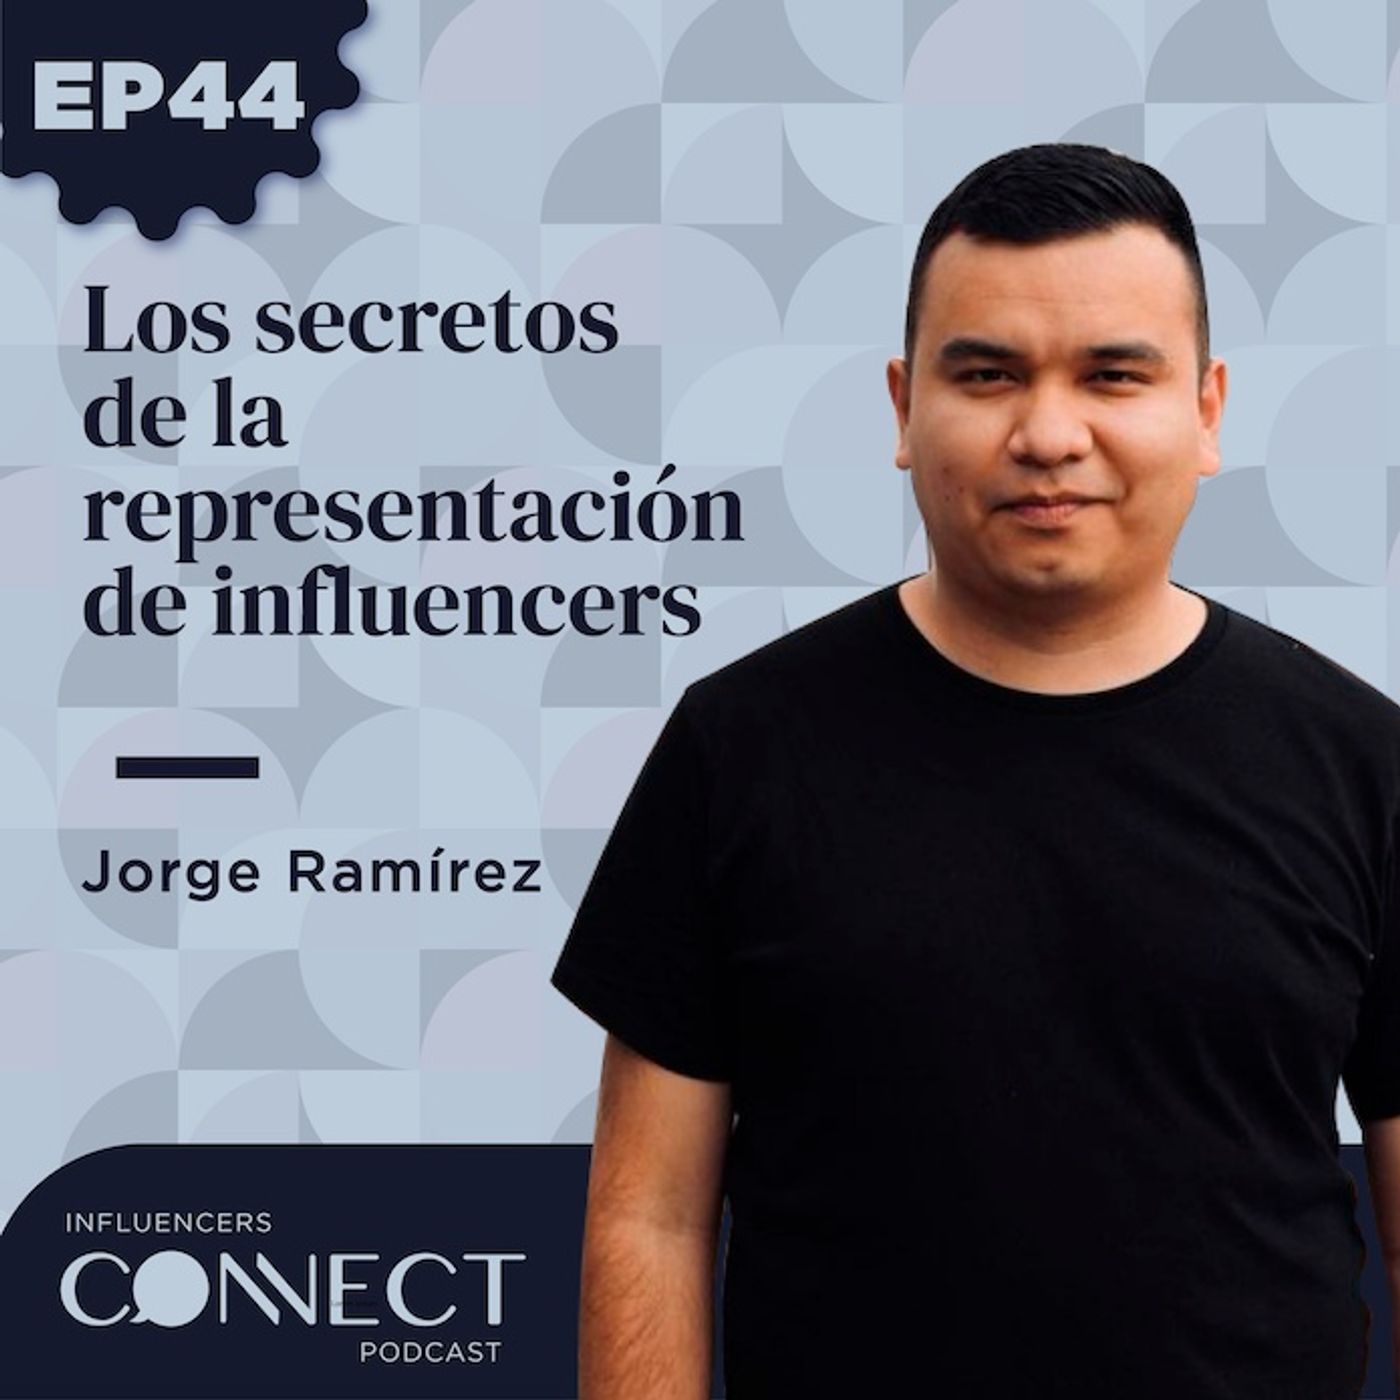 El verdadero poder de los influencers con Jorge Ramírez (@JorGeek)